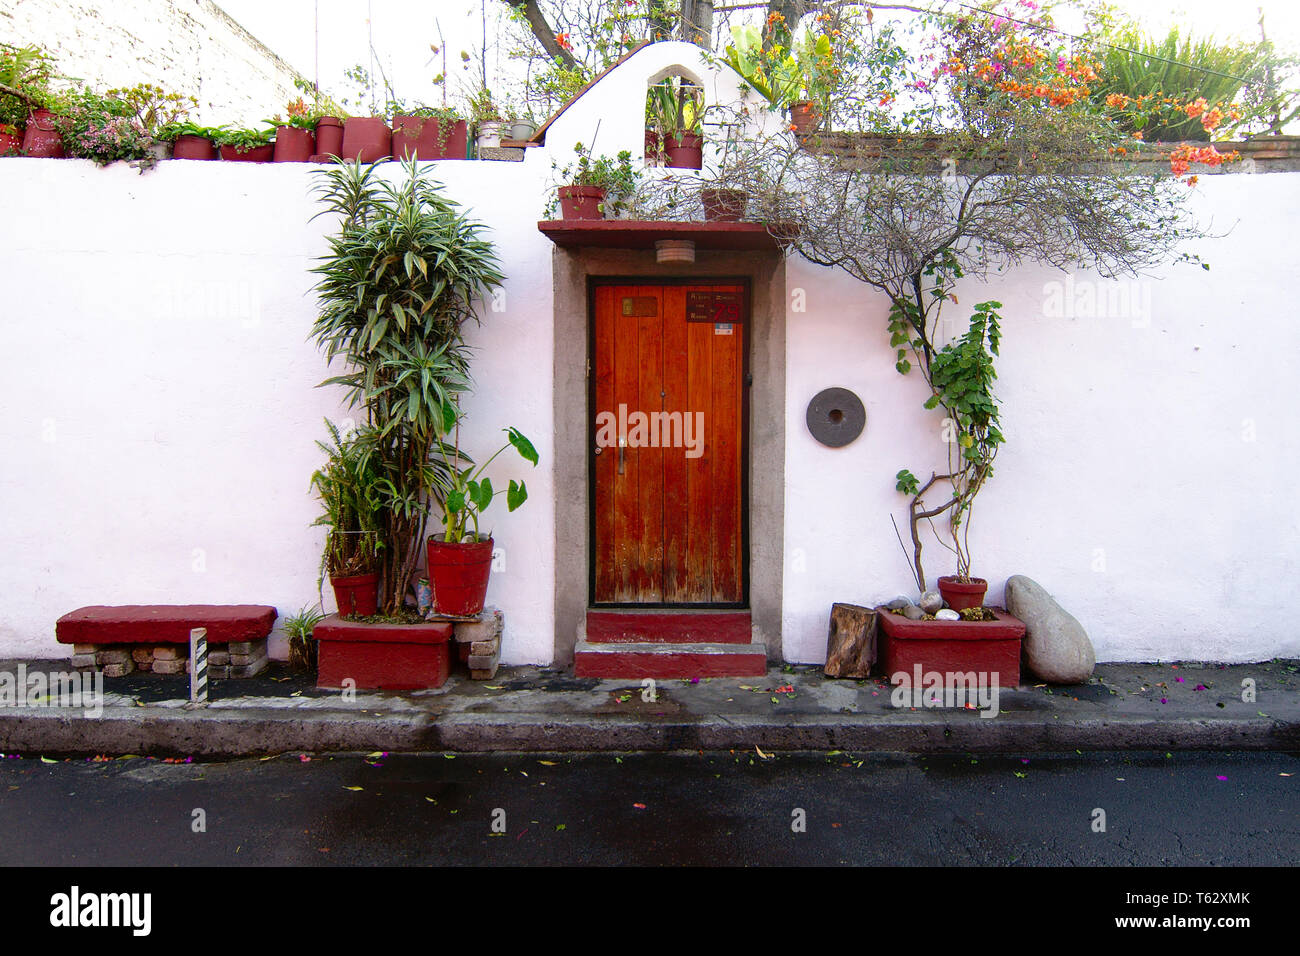 Mexiko City, Mexiko - 2019: Ein Haus in der coyoacan Bezirk zeigt die traditionelle Dekoration Stil der Gegend. Stockfoto